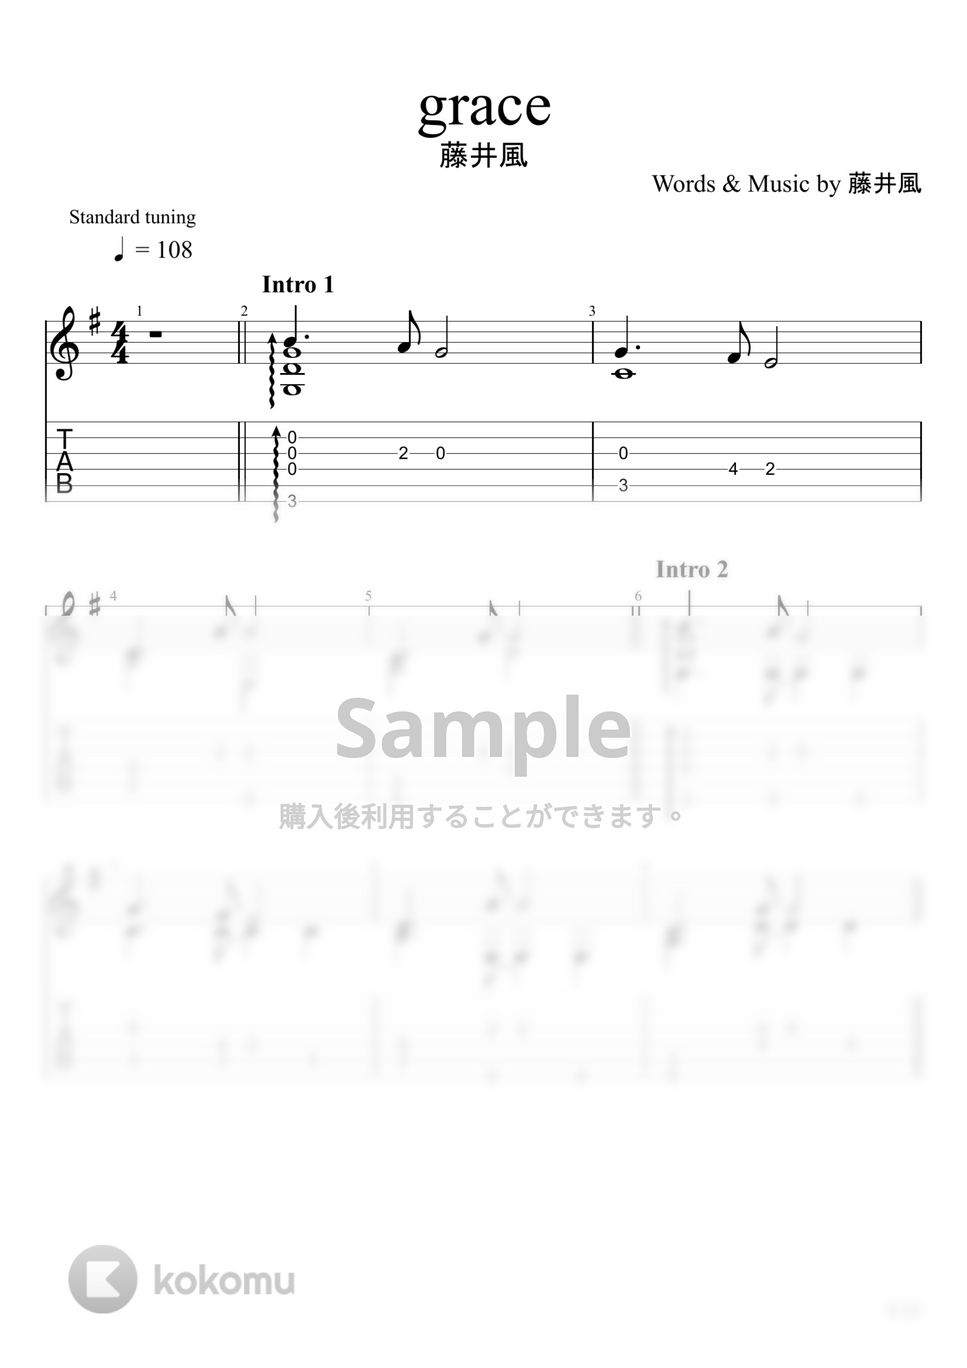 藤井風 - grace (ソロギター) by u3danchou